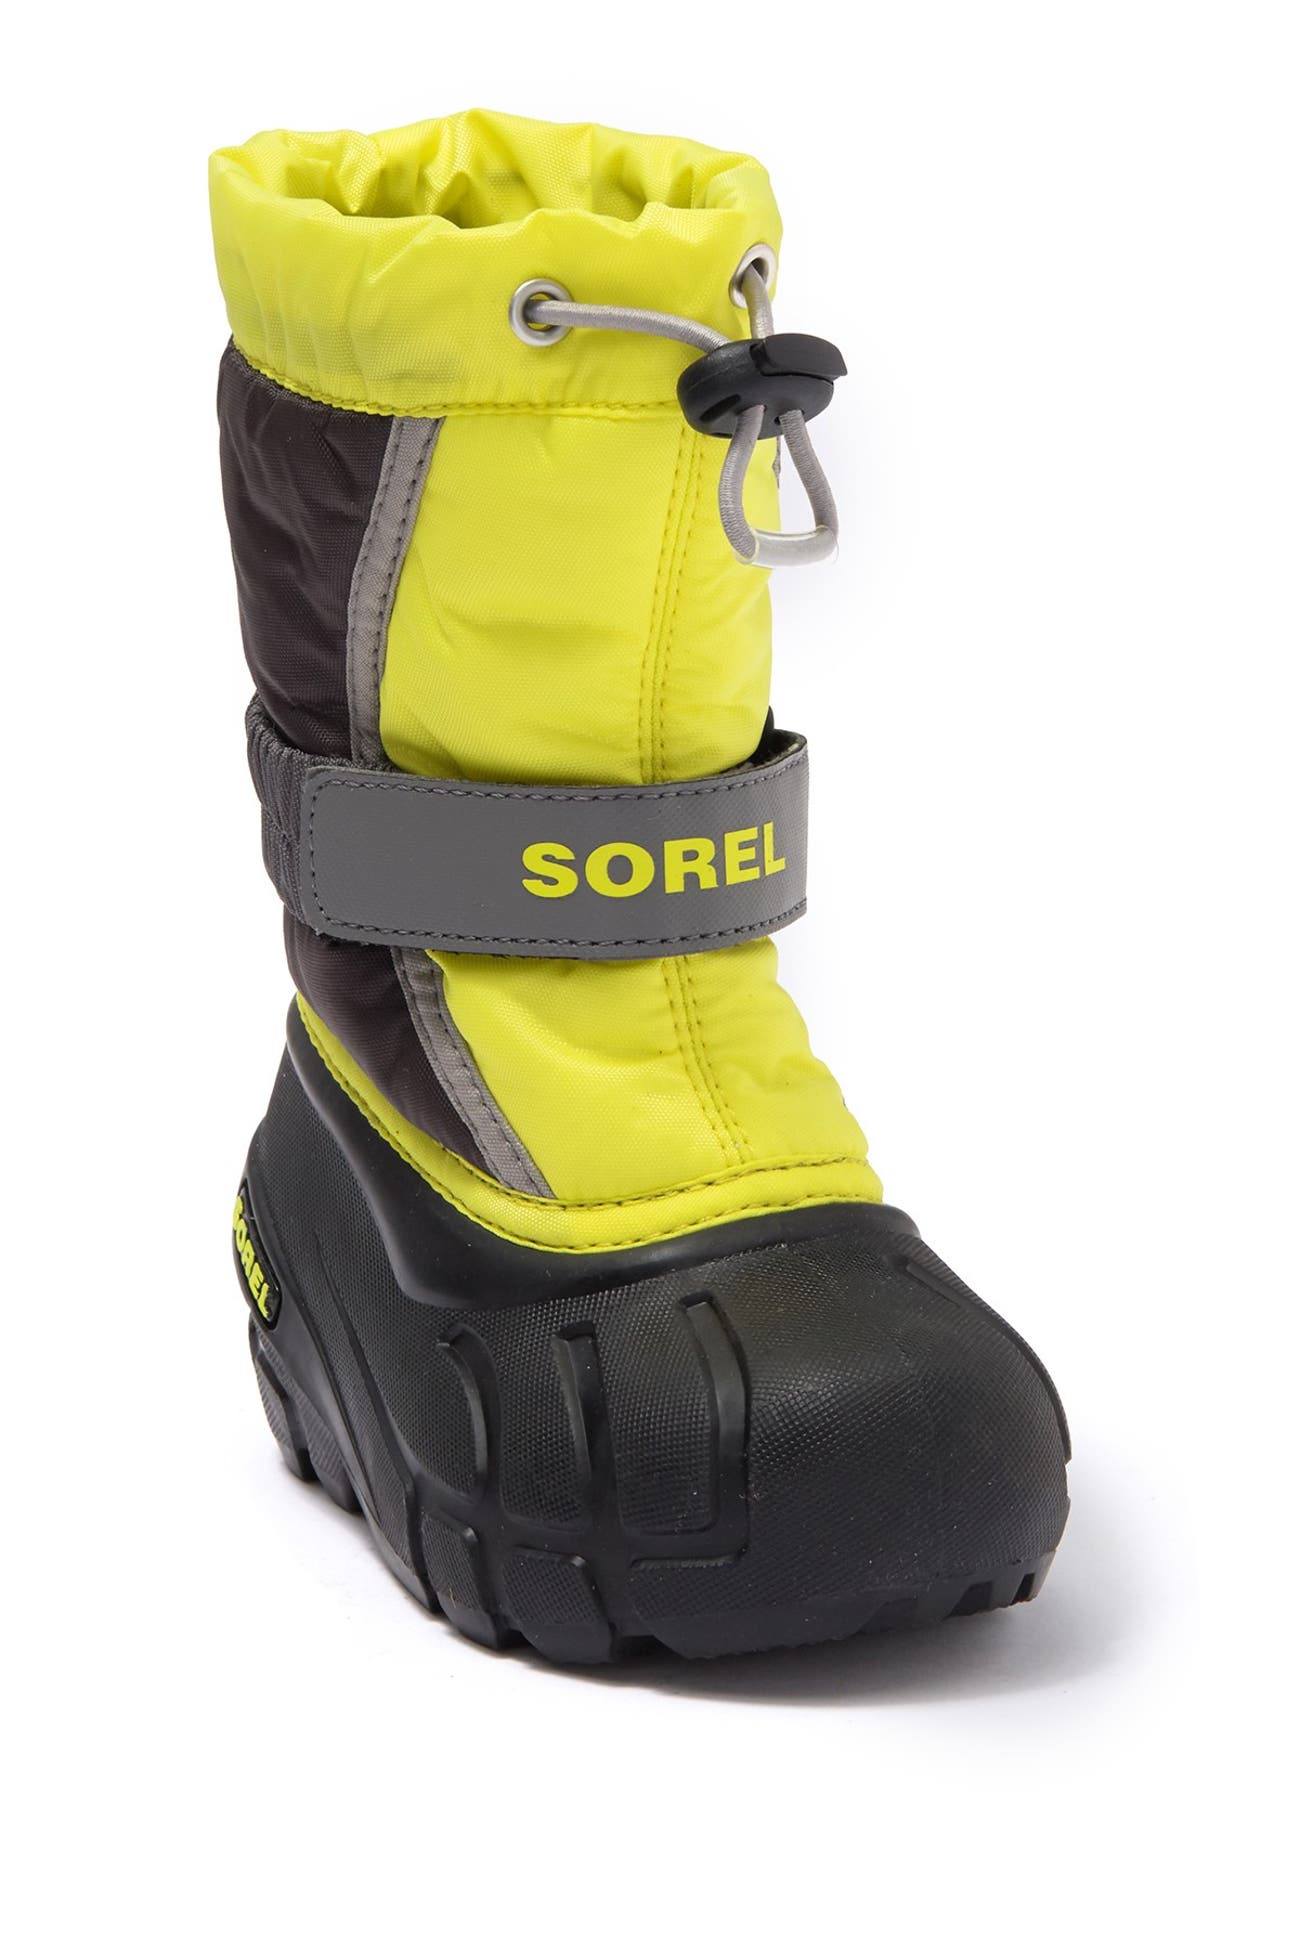 Sorel | Flurry Waterproof Snow Boot | Nordstrom Rack